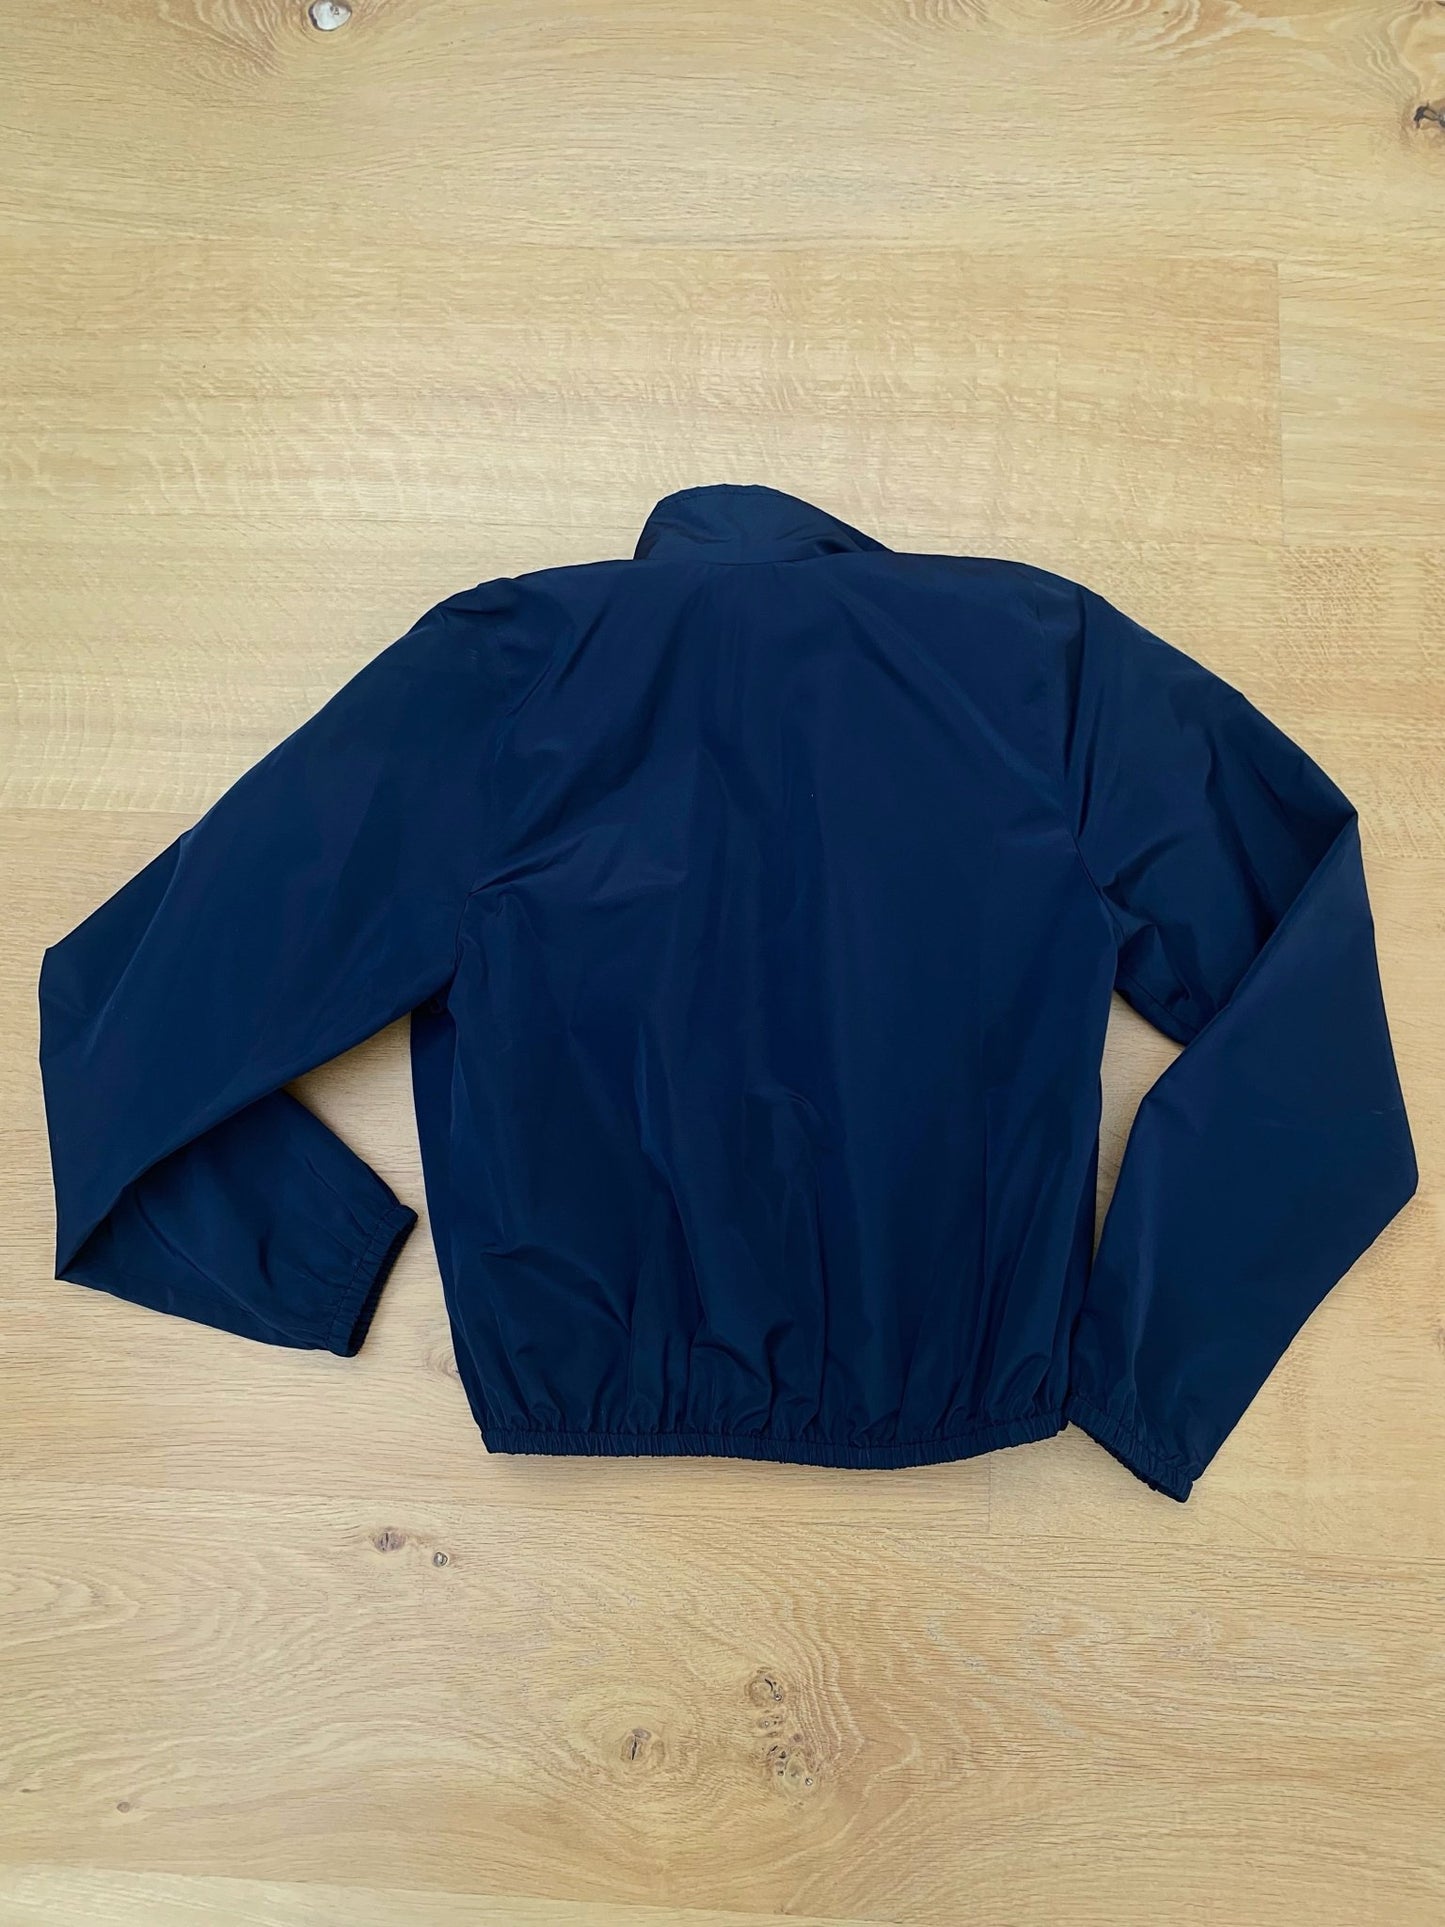 BALENCAIGA tracksuit jacket - six__pistols designer fashion items